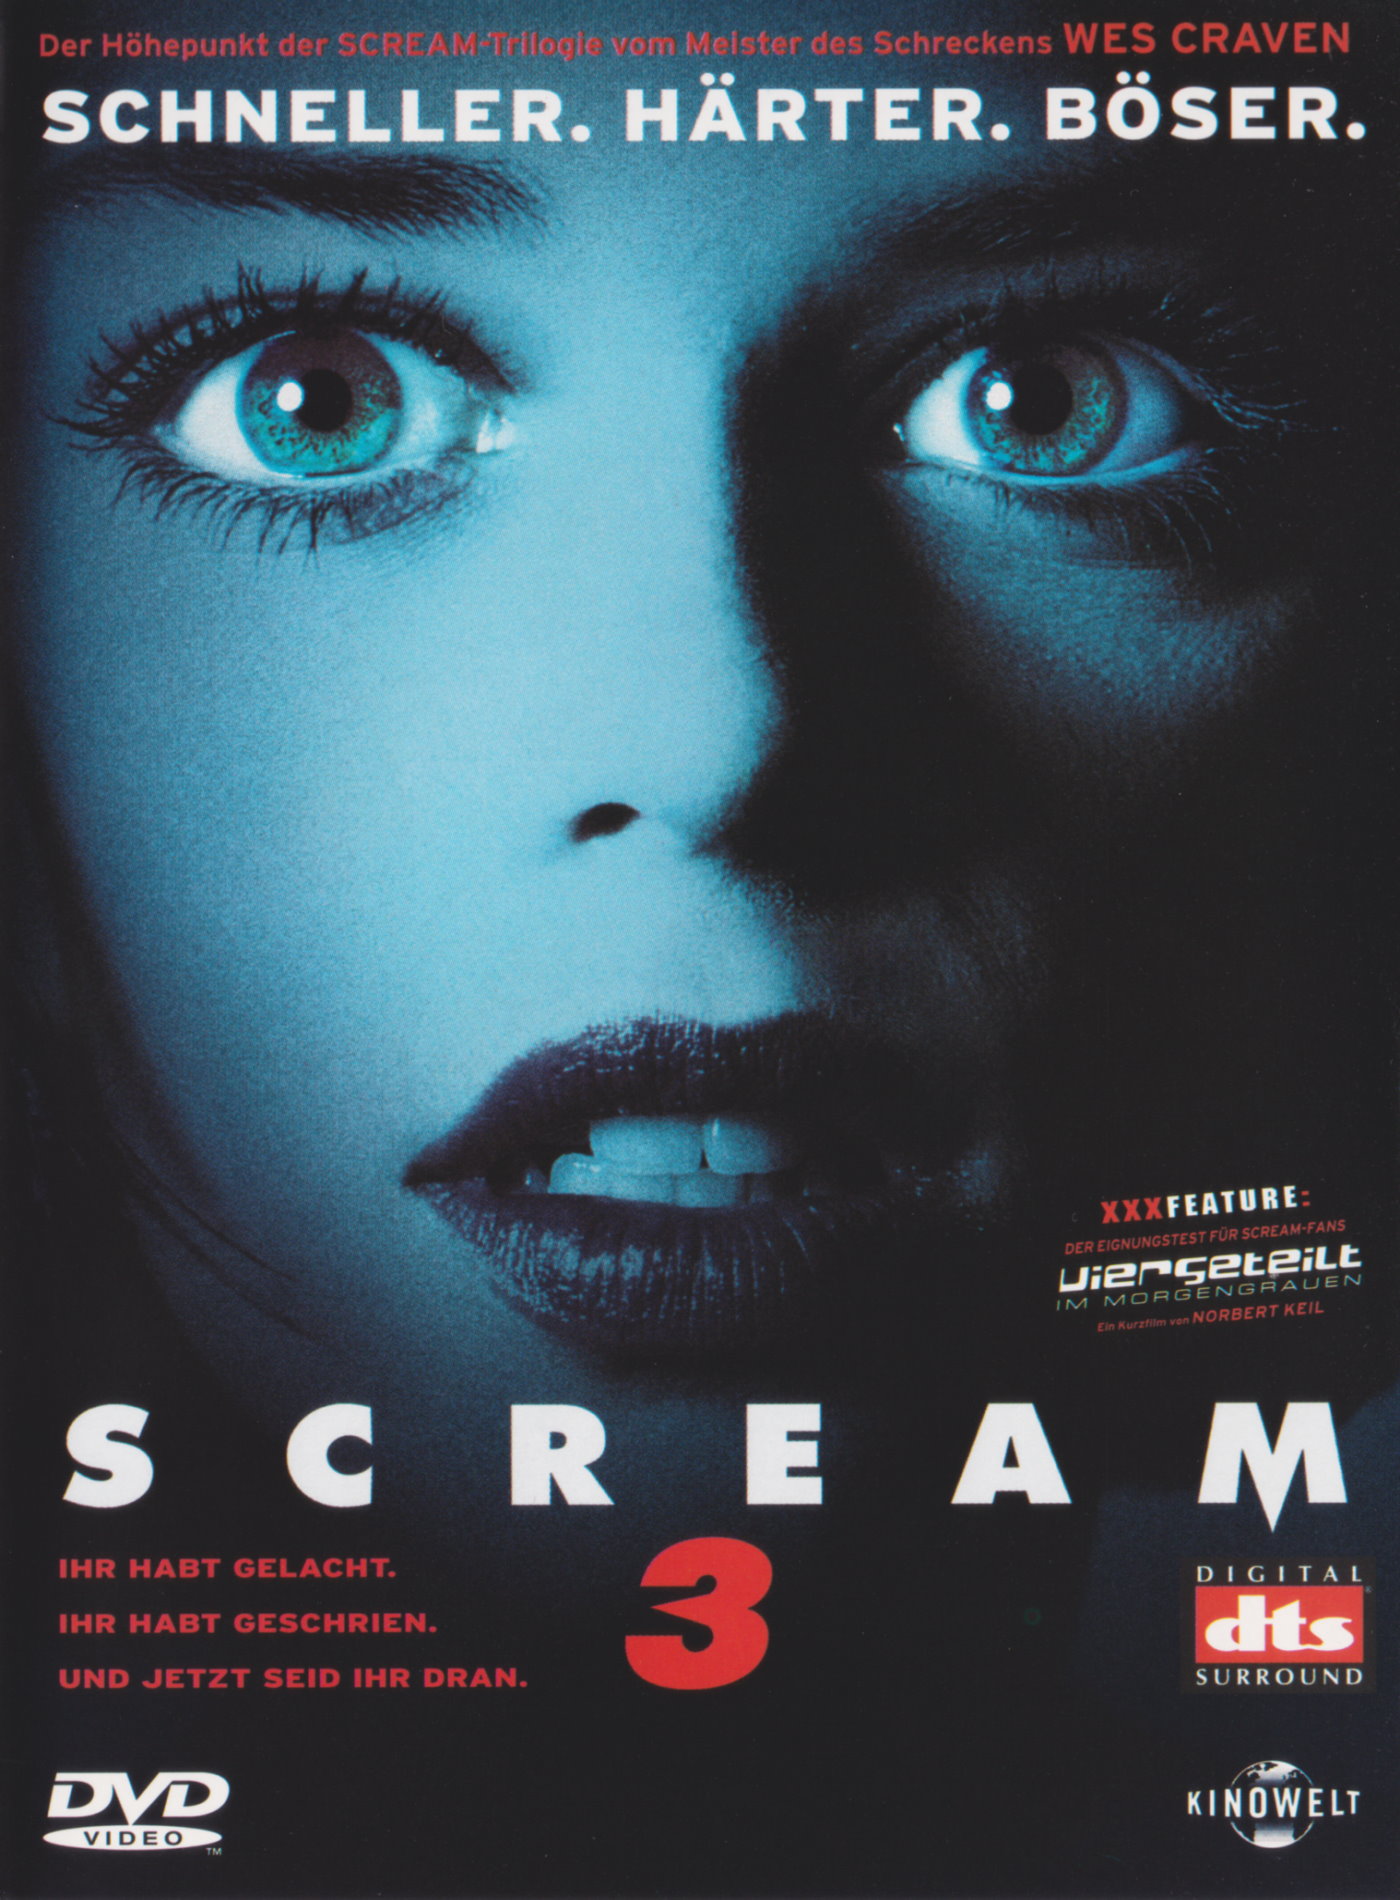 Cover - Scream 3.jpg